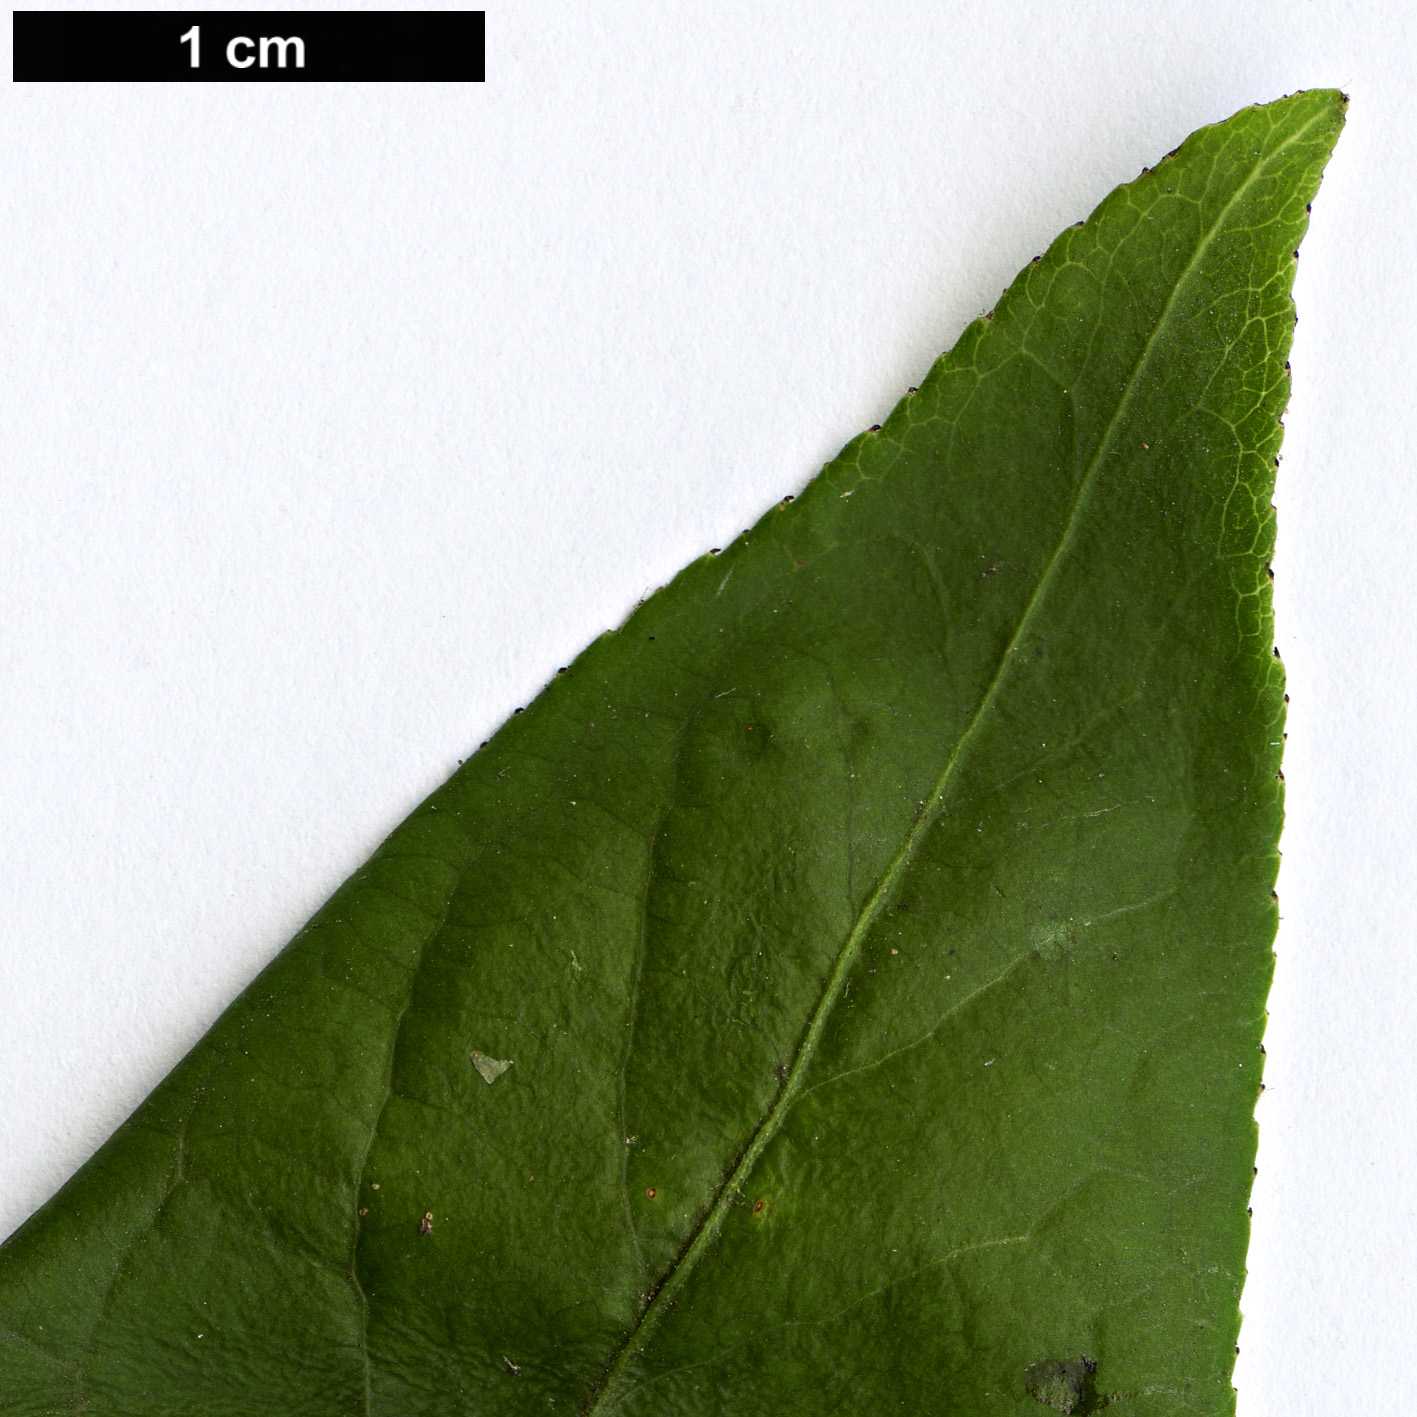 High resolution image: Family: Celastraceae - Genus: Euonymus - Taxon: hamiltonianus - SpeciesSub: var. lanceifolius